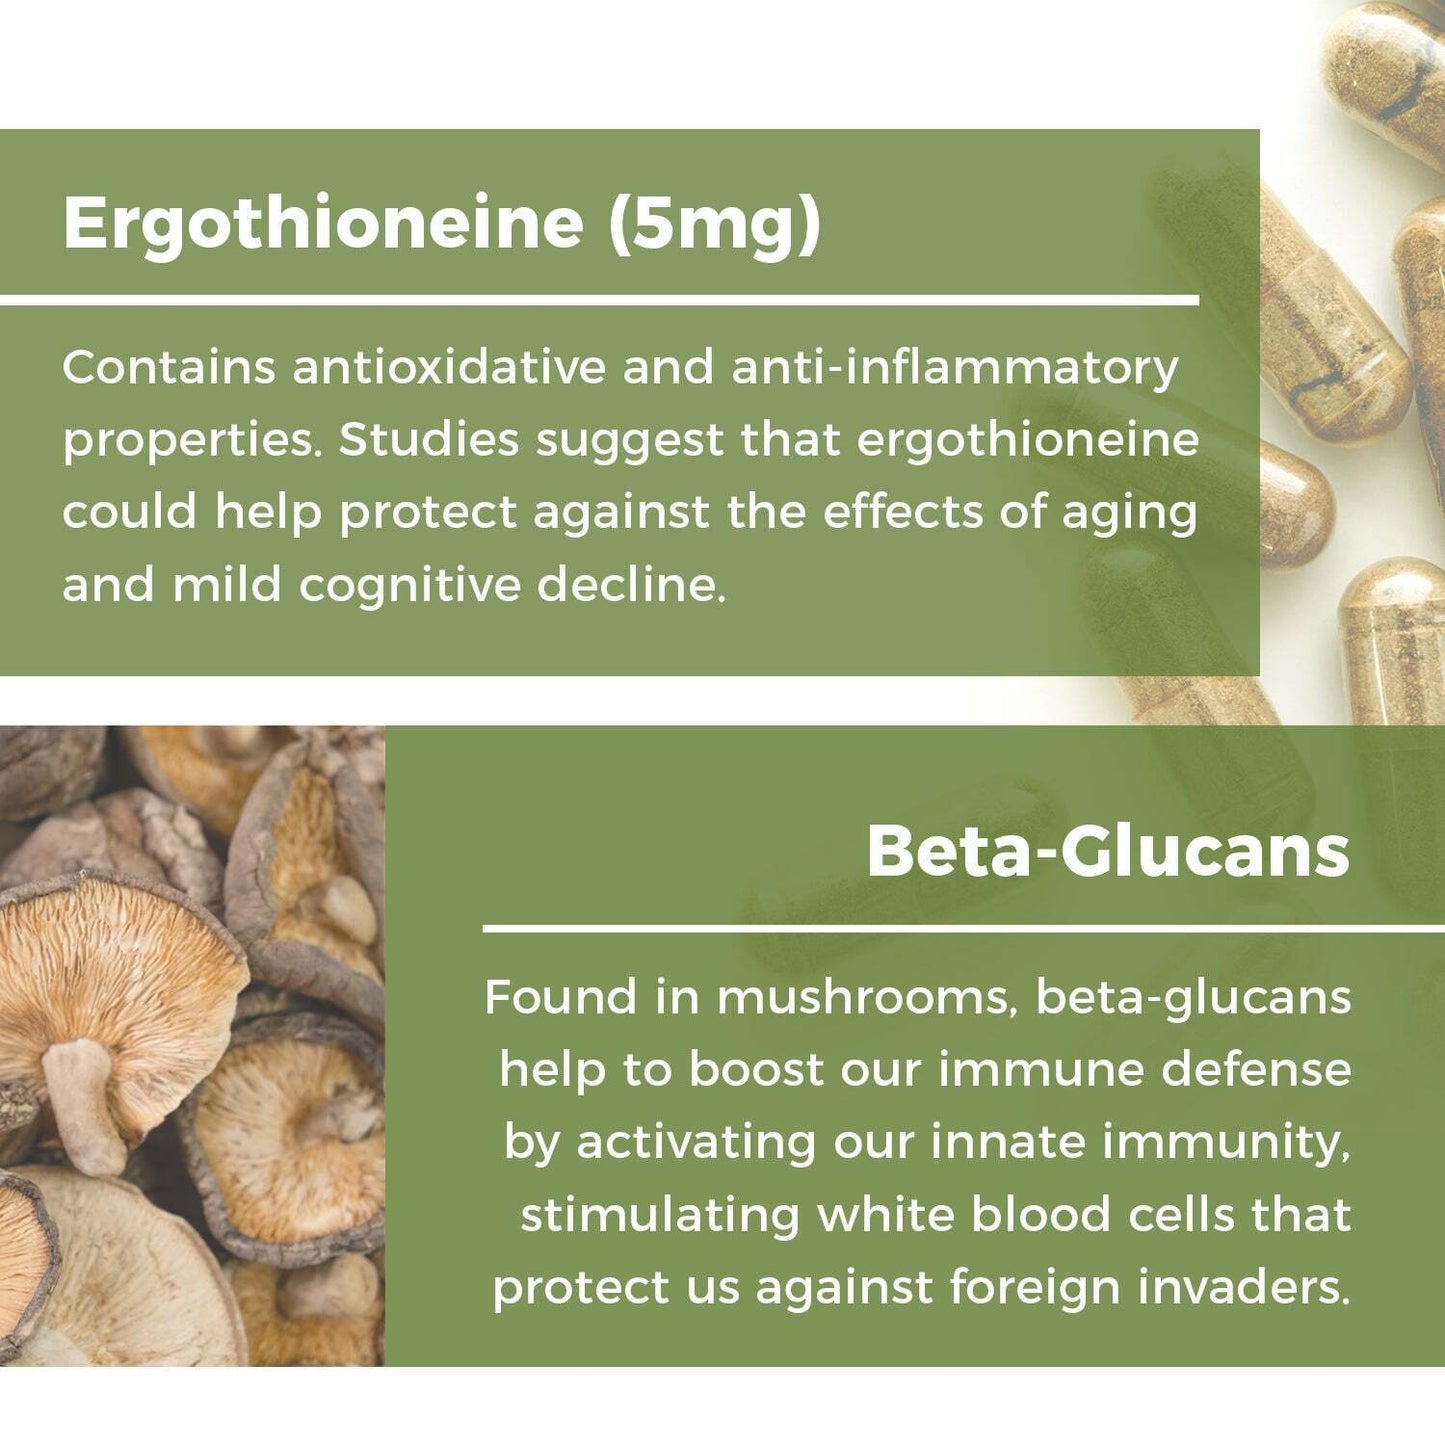 Real Mushrooms Organic Ergo+ Ergothioneine Antioxidant Pure Vegan 60 caps NEW